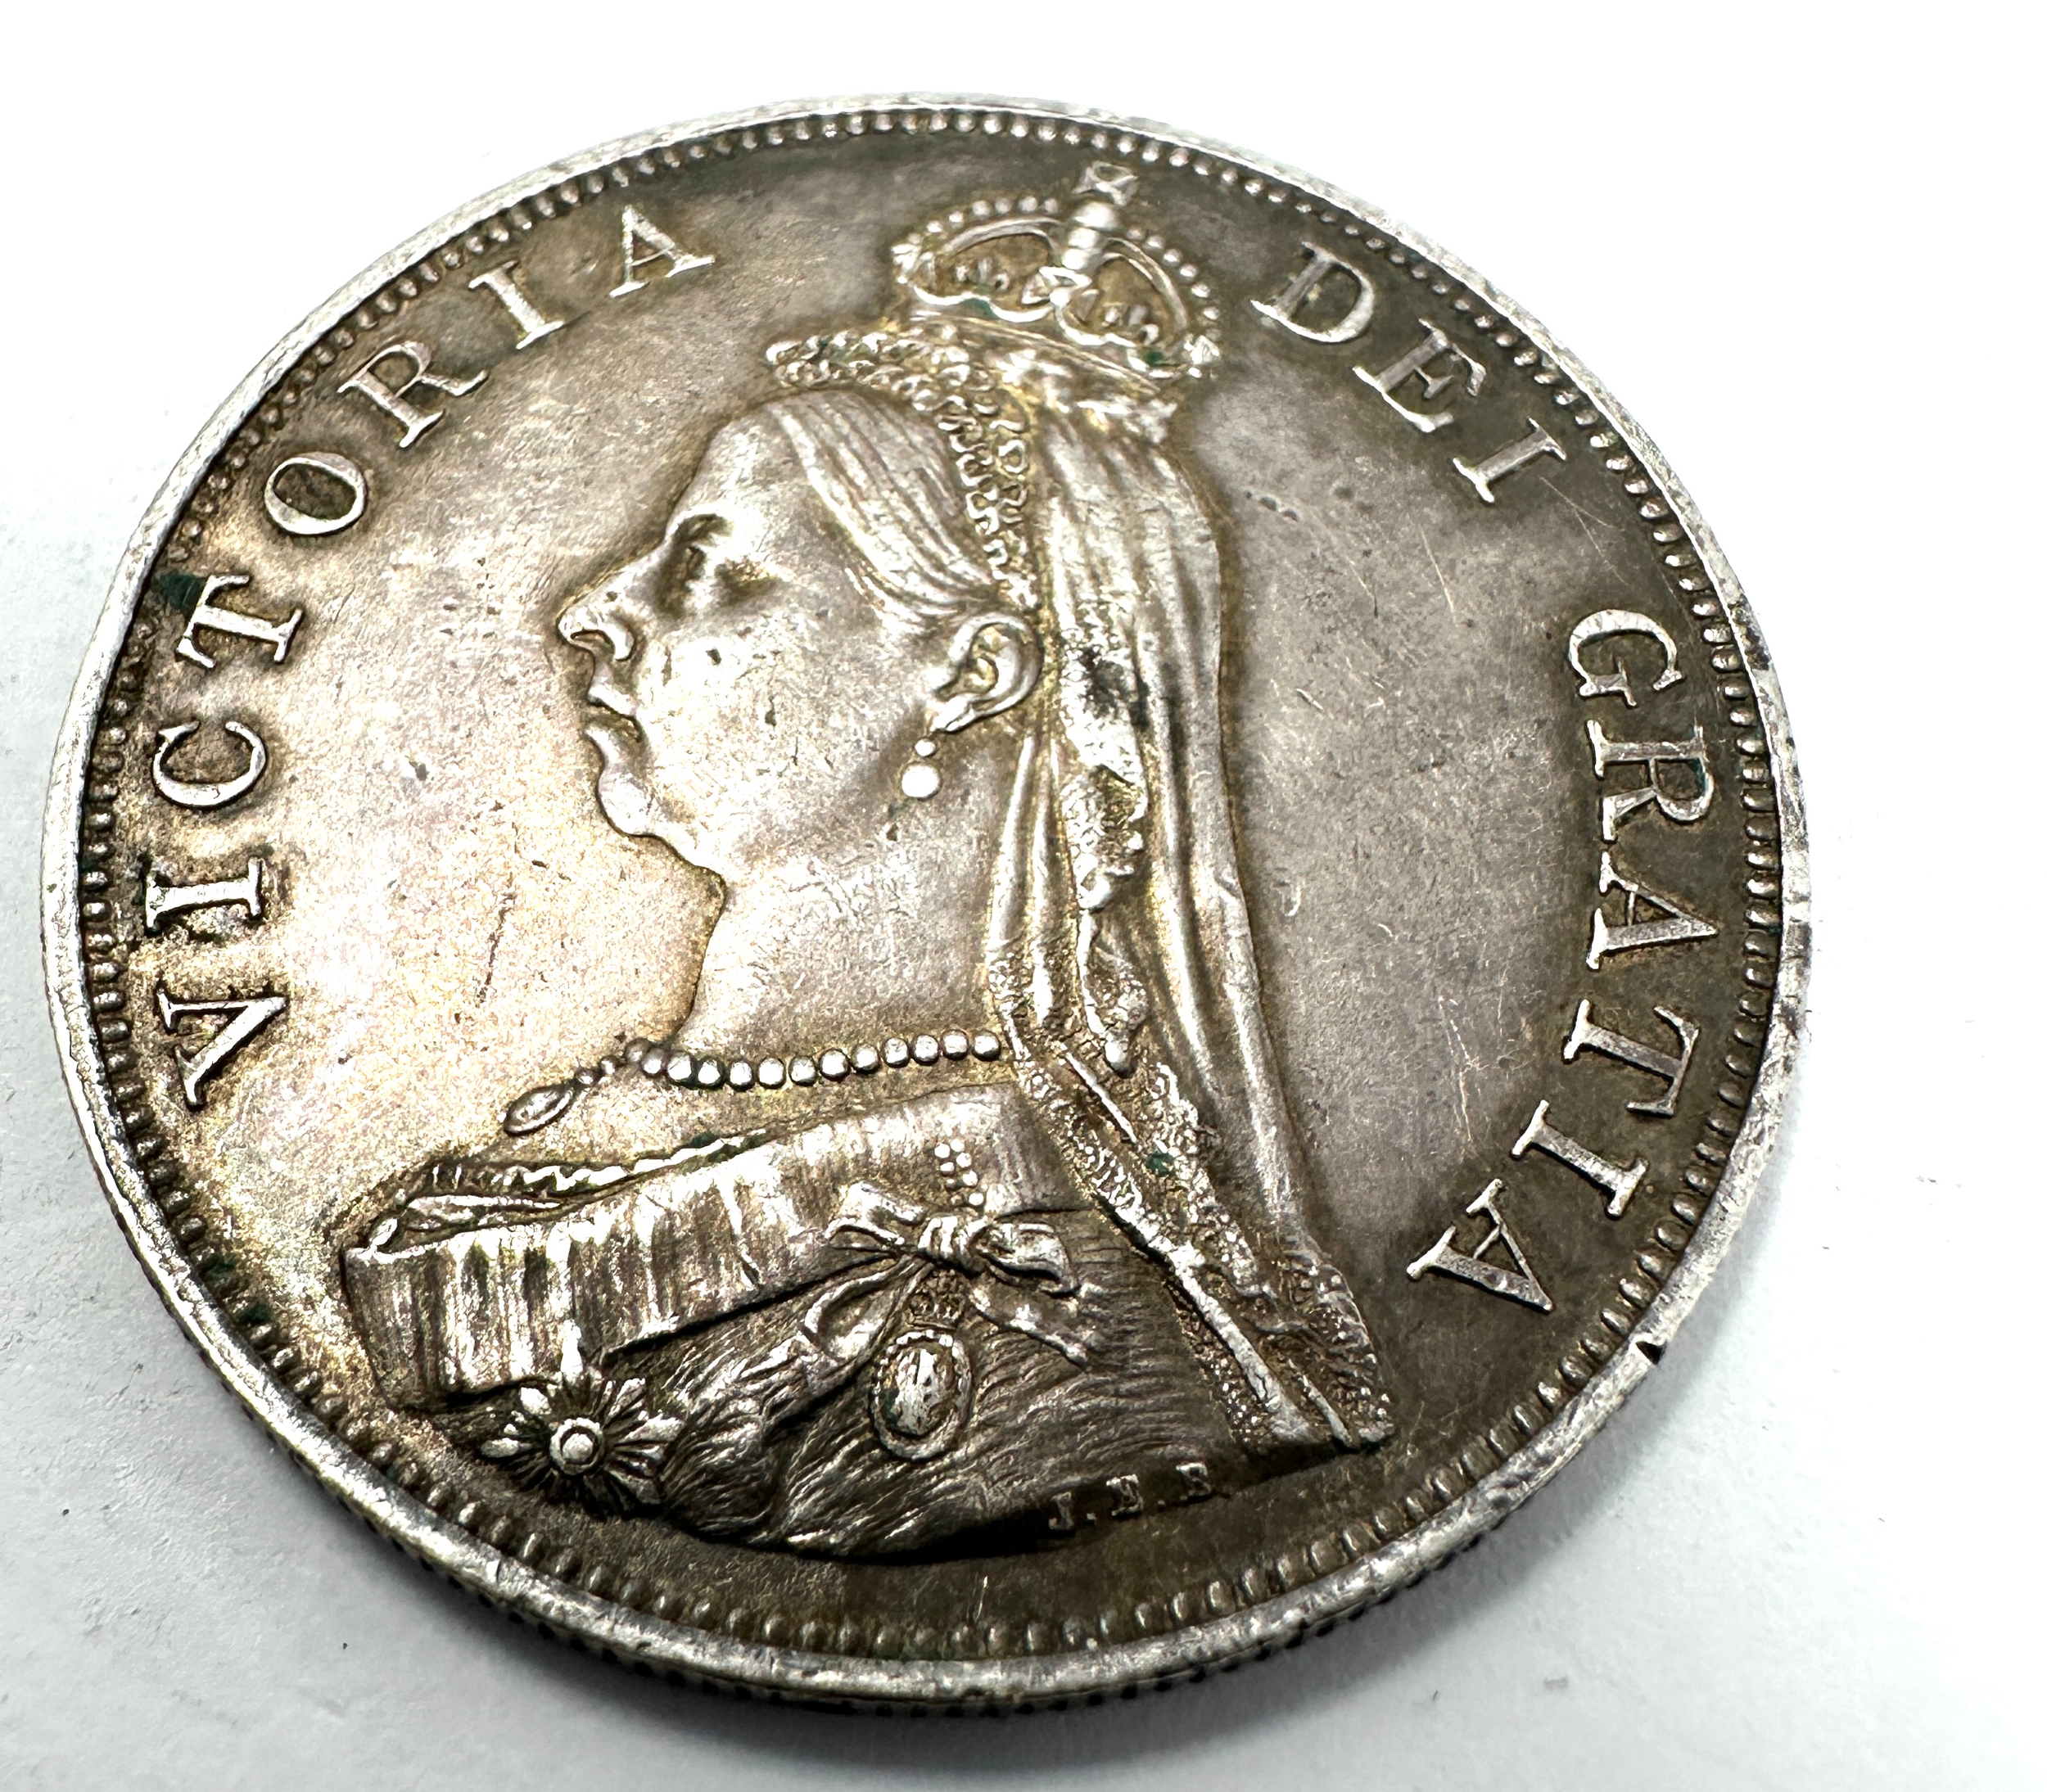 1887 Queen Victoria Jubilee Head Silver Double Florin high grade coin